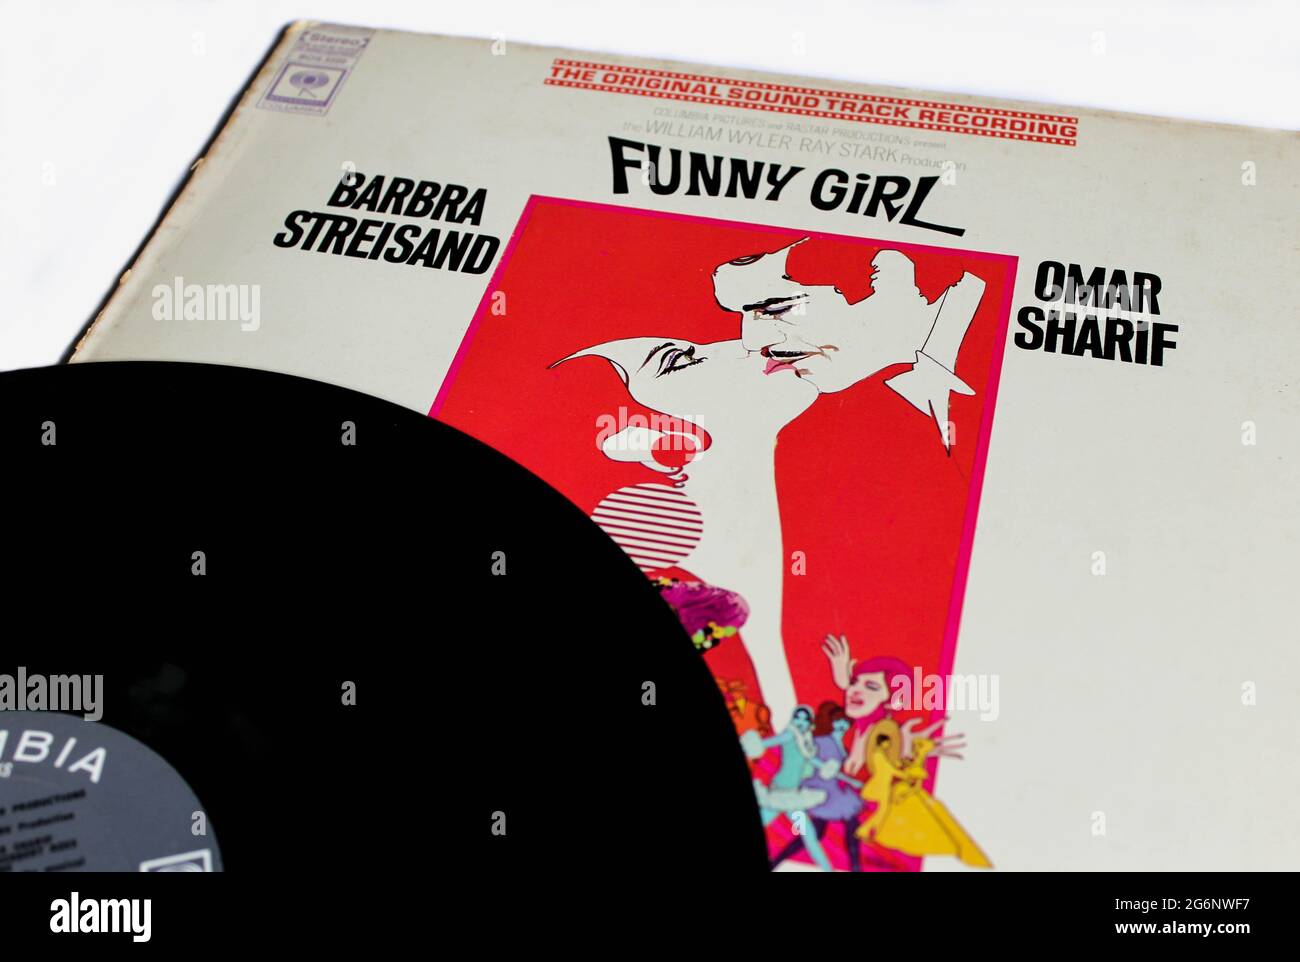 Funny Girl ist ein biografischer, musikalischer Comedy-Drama-Film aus dem Jahr 1968 von William Wyler. Soundtrack-Album auf Vinyl-Schallplatte. Album-Cover Stockfoto